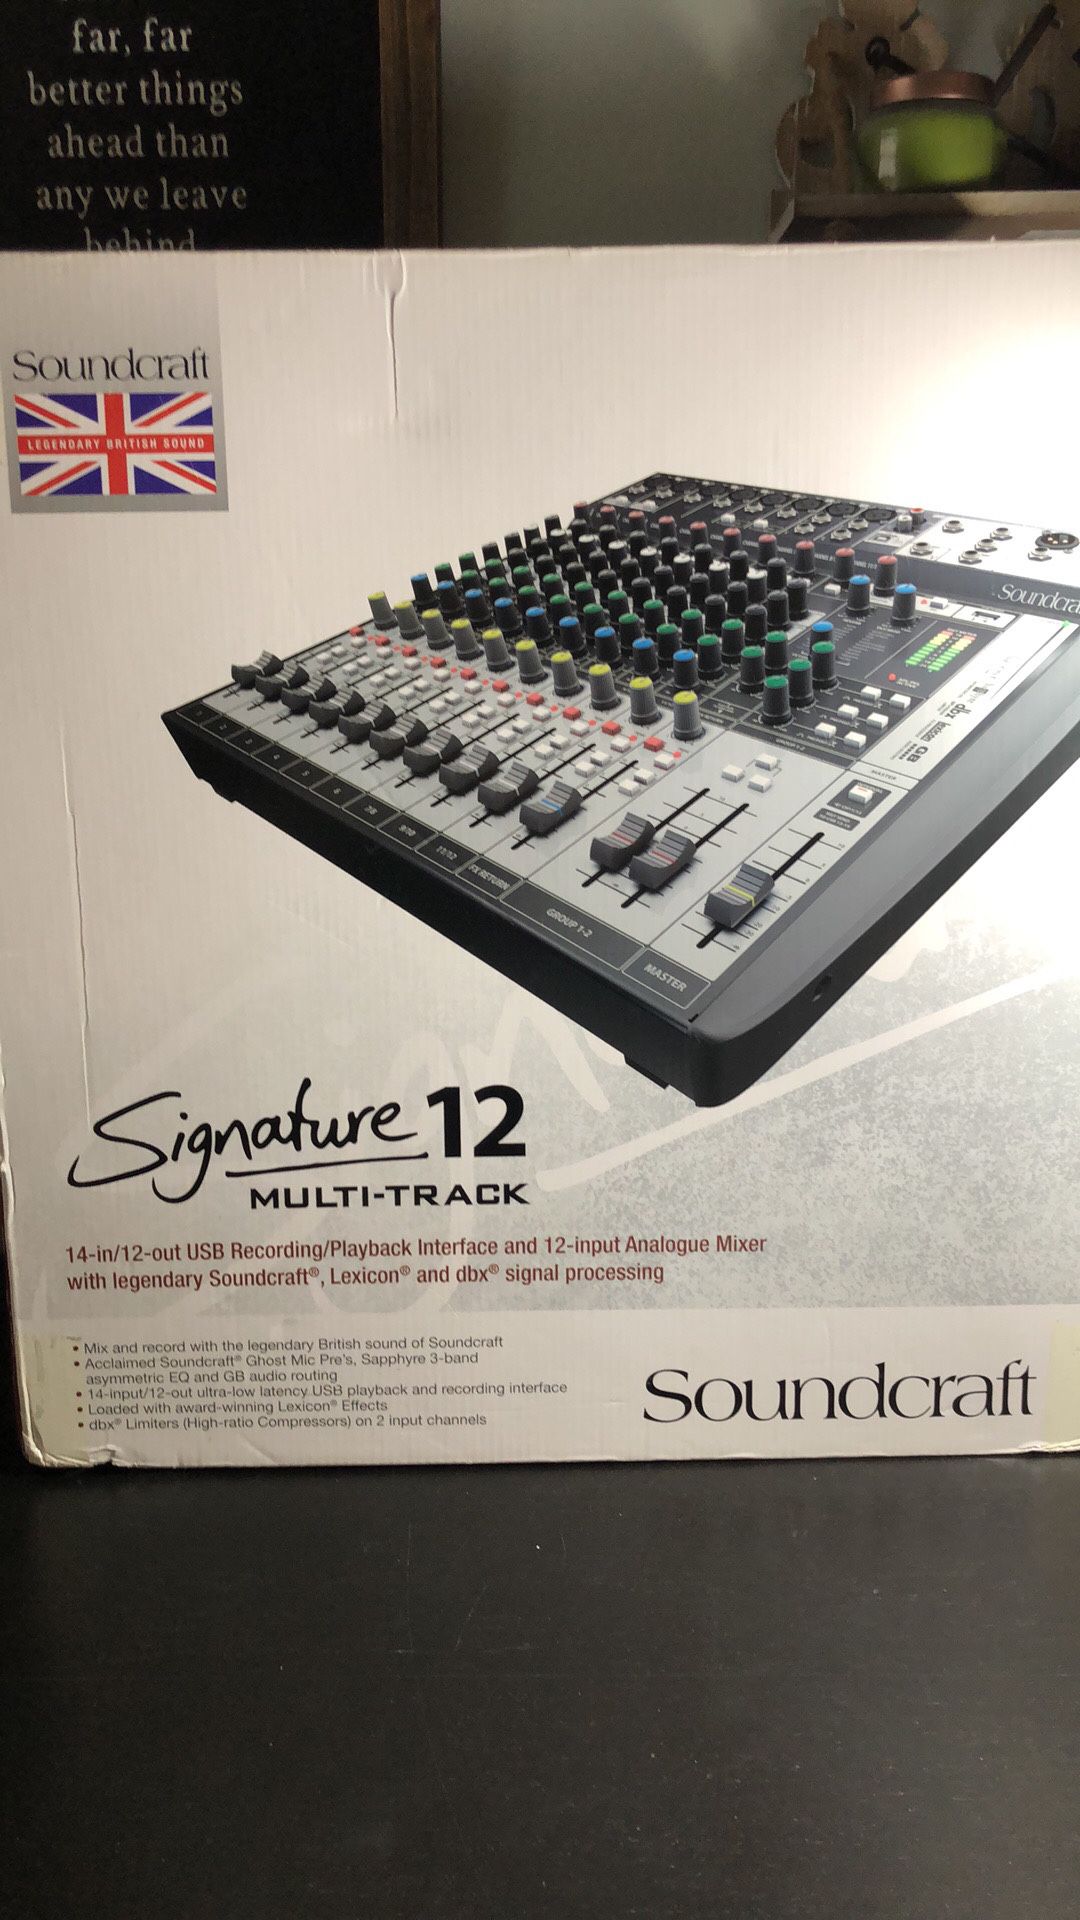 Soundcraft Signature 12 Multi-Track Soundboard